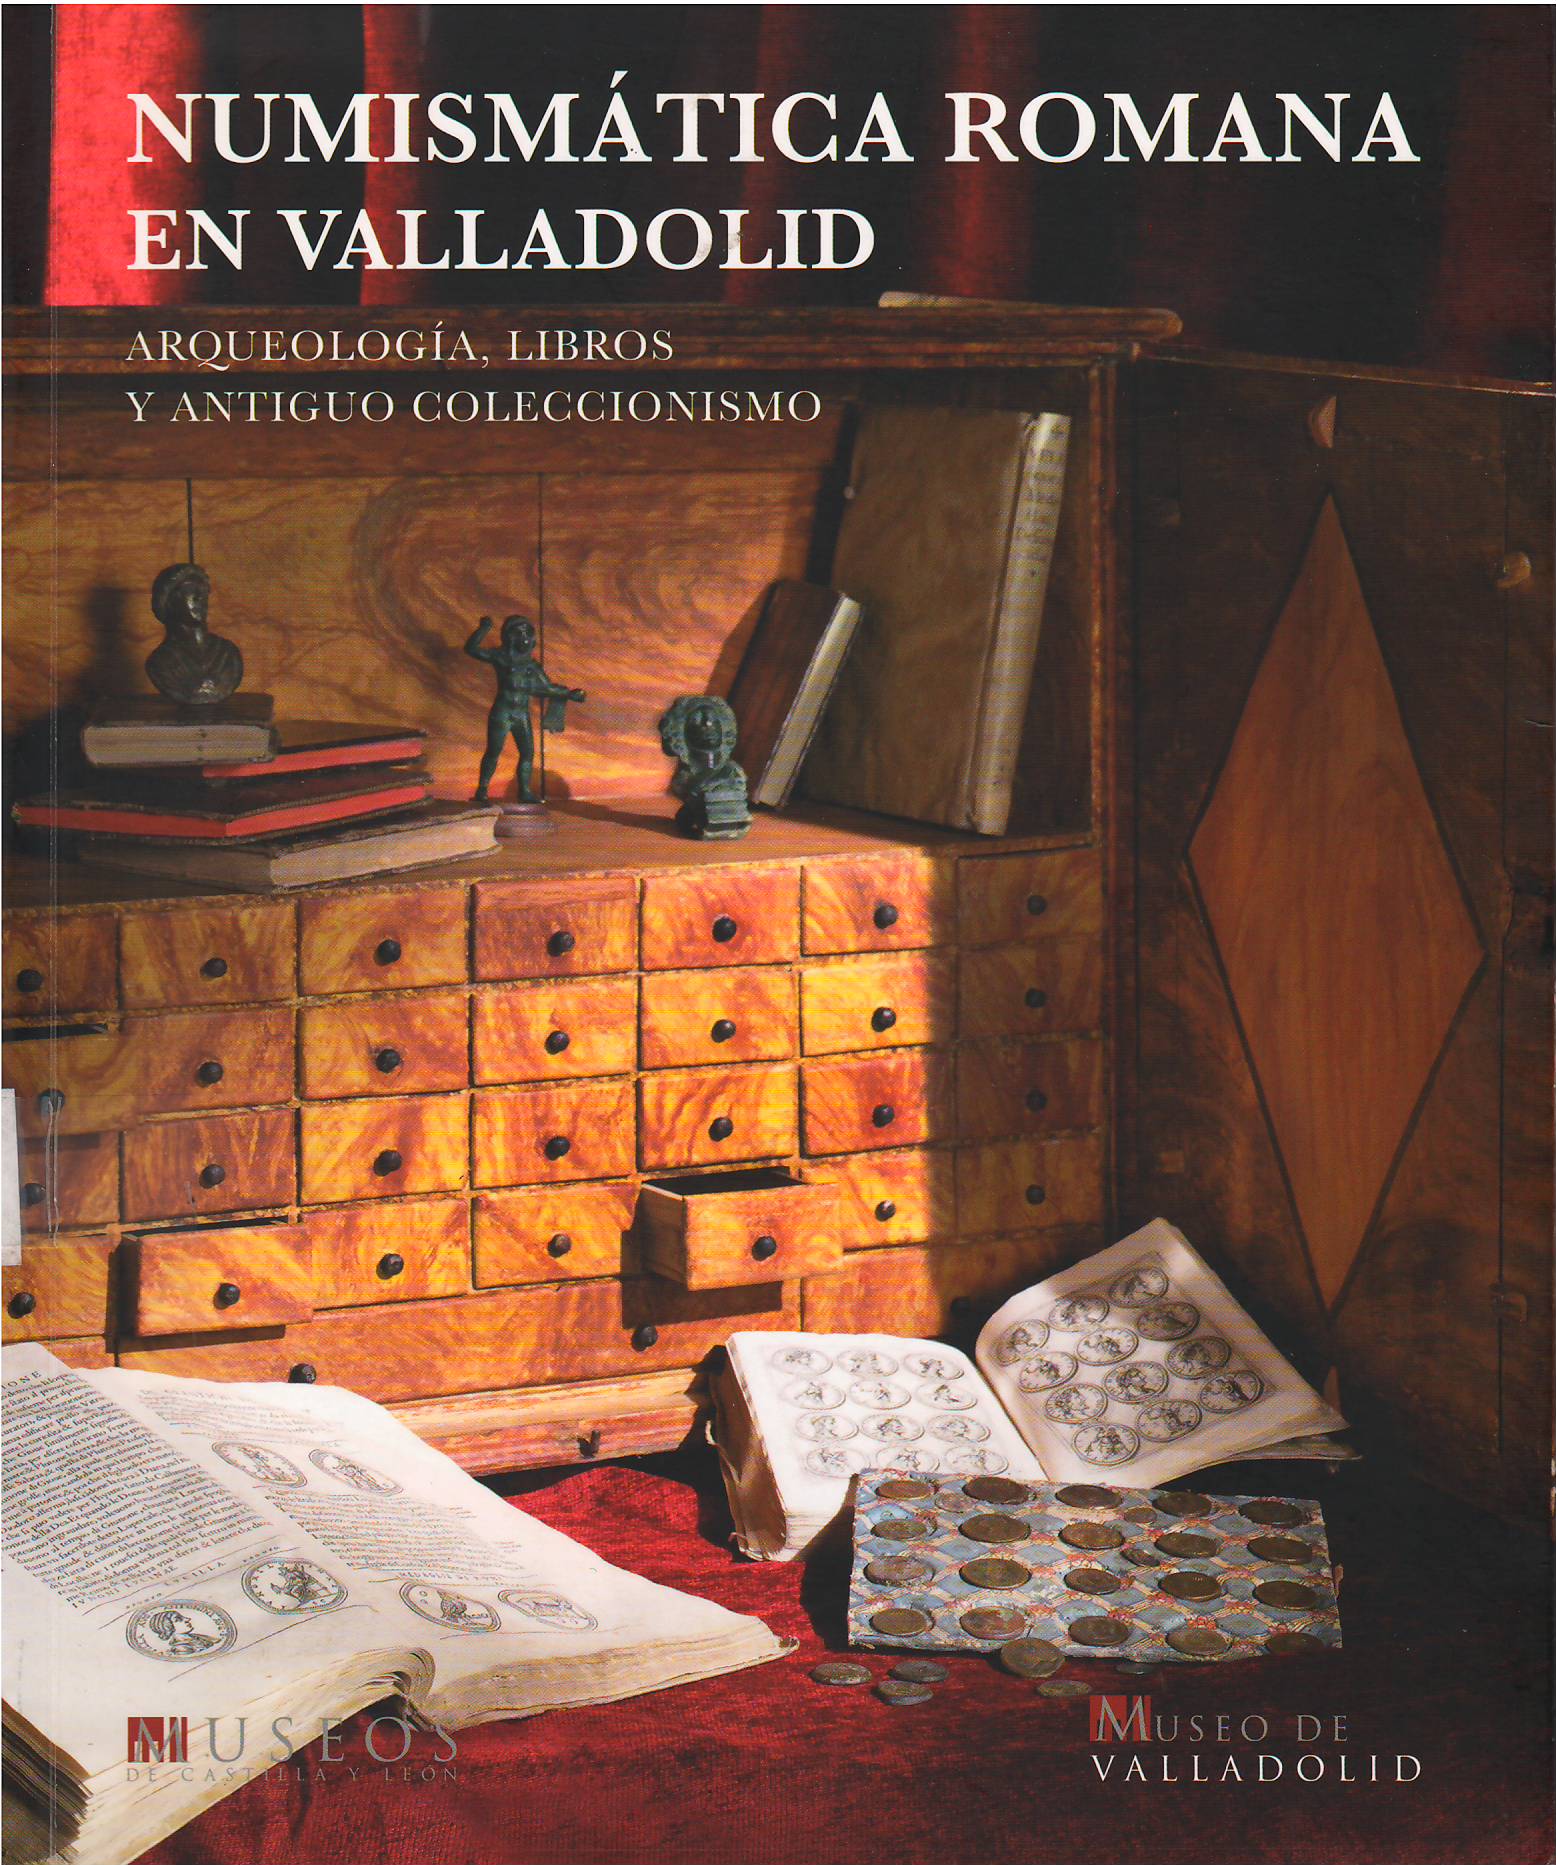 Imagen de portada del libro Numismática Romana en Valladolid